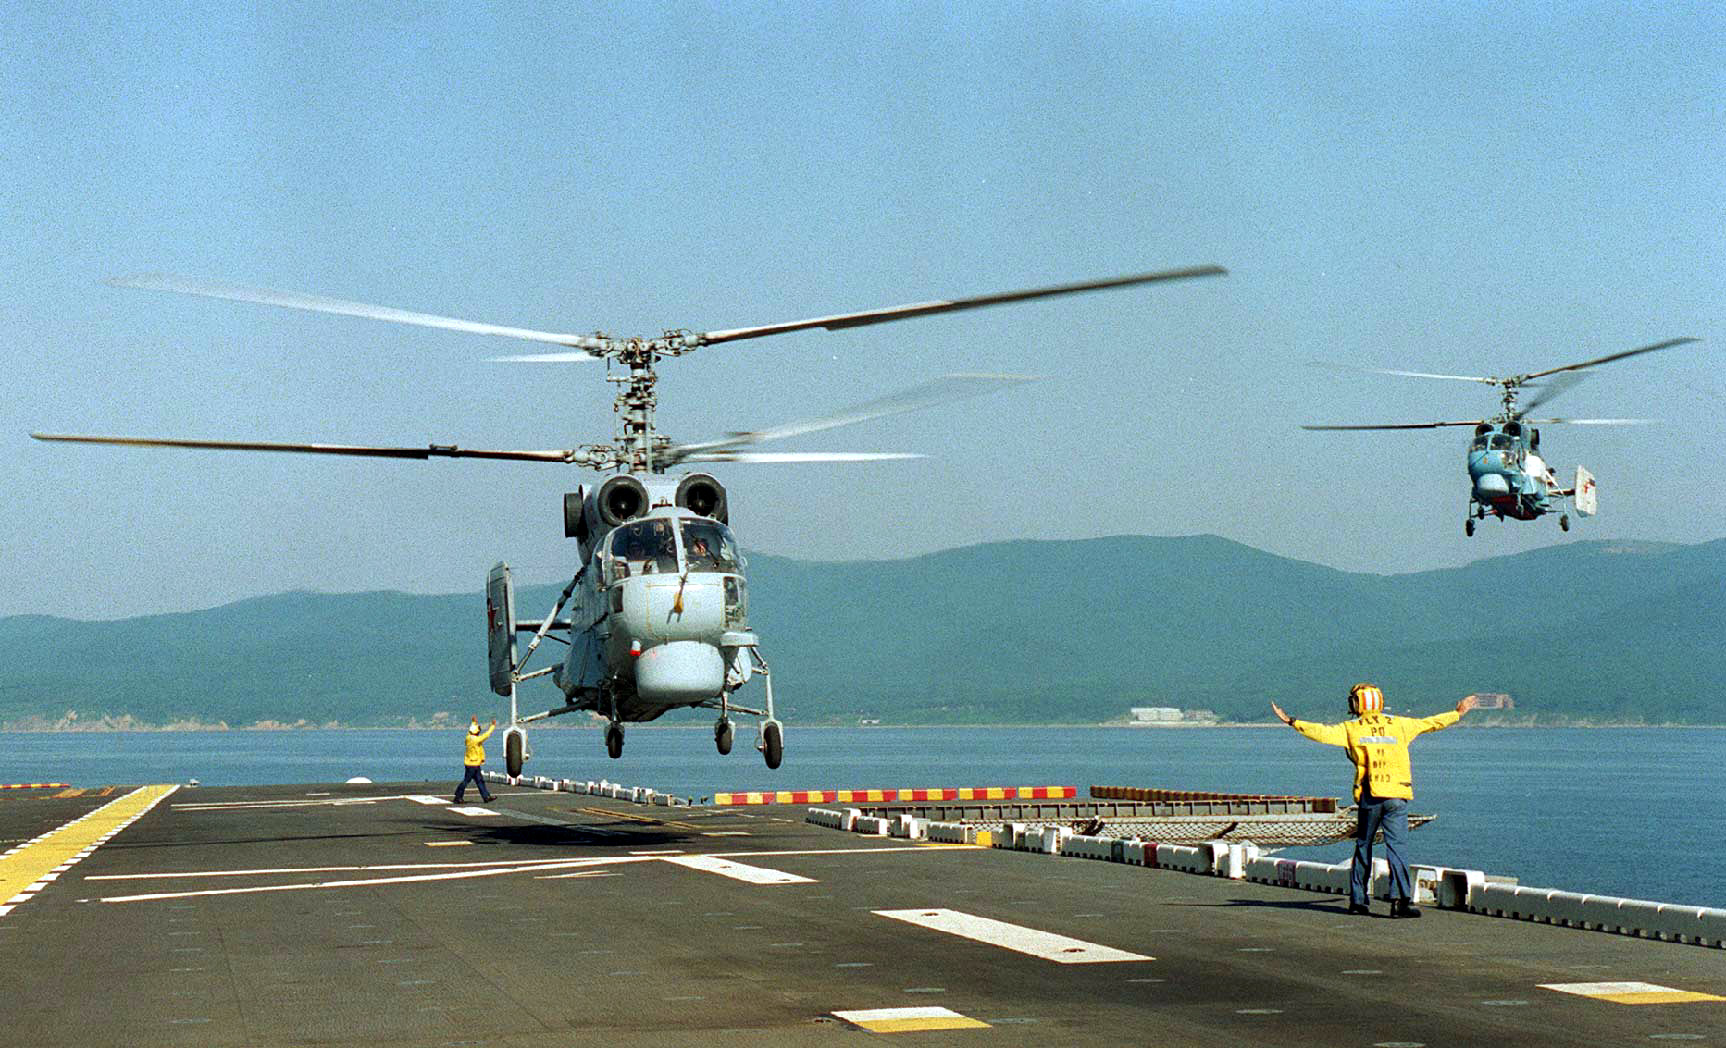 Ka-27 approach aboard USS "BELLEAU WOOD" (LHA 3)